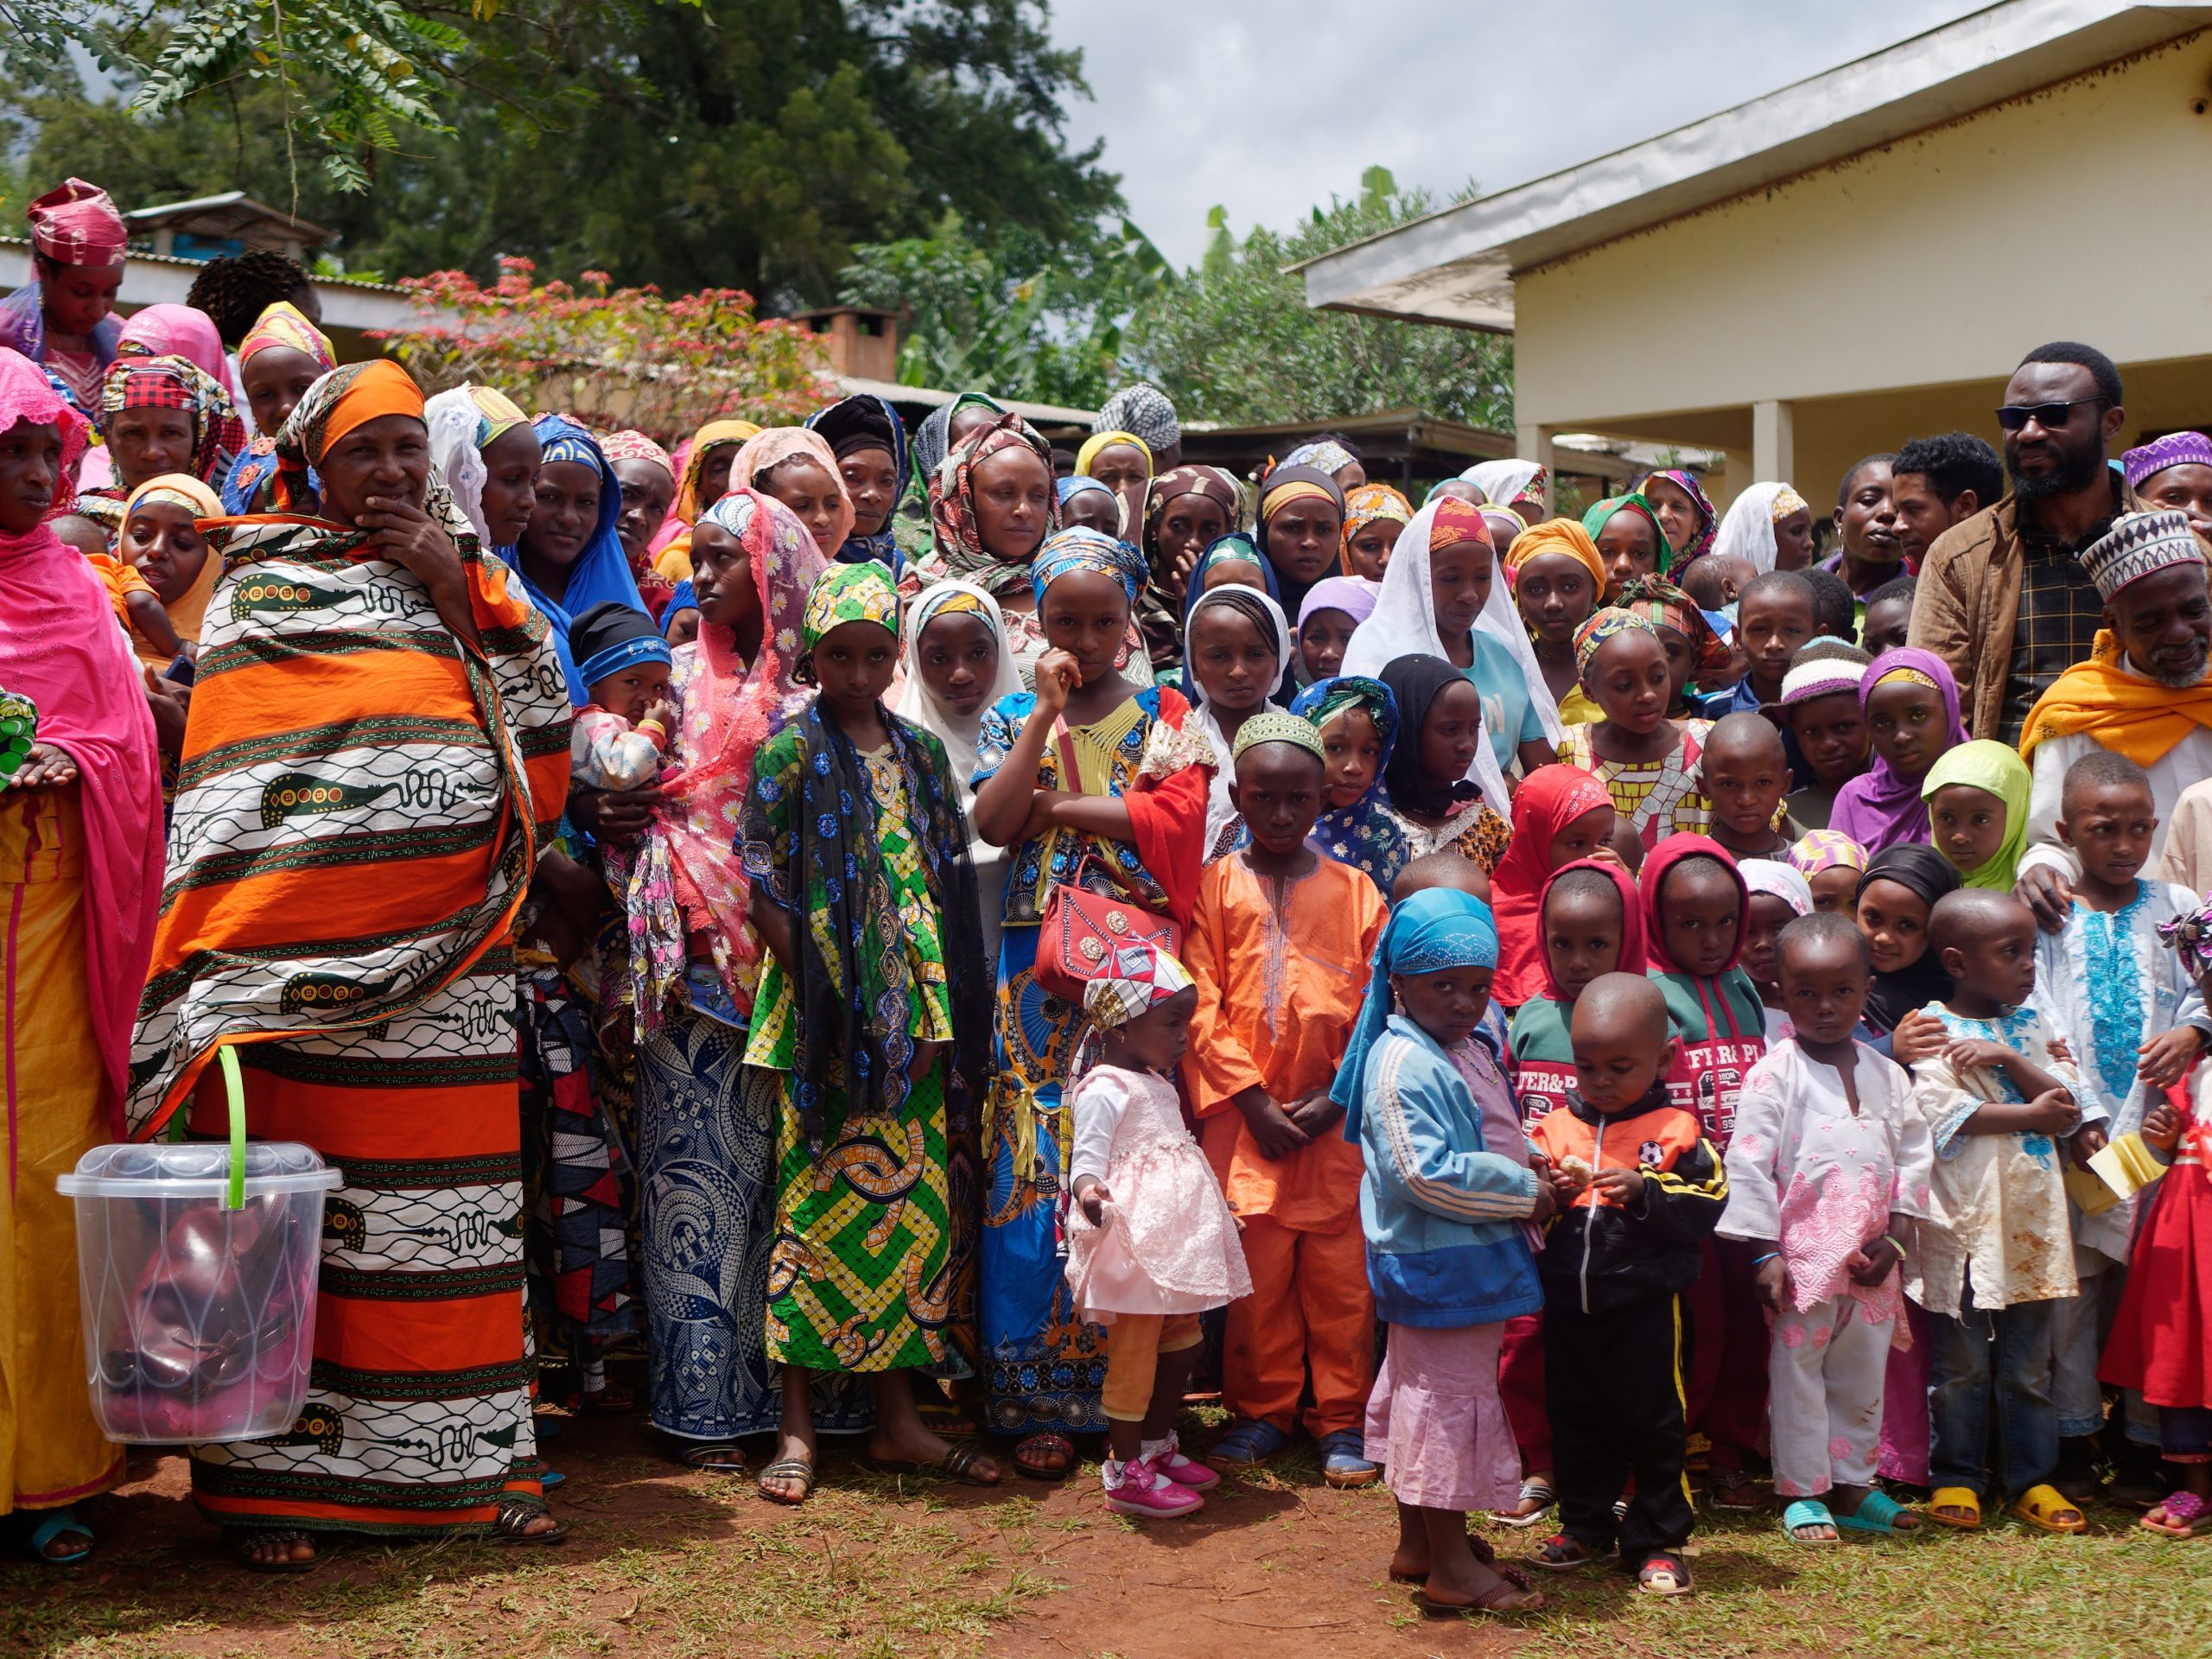 Lire la suite à propos de l’article Cameroun : Caridad apporte une aide humanitaire aux réfugiés ambazoniens